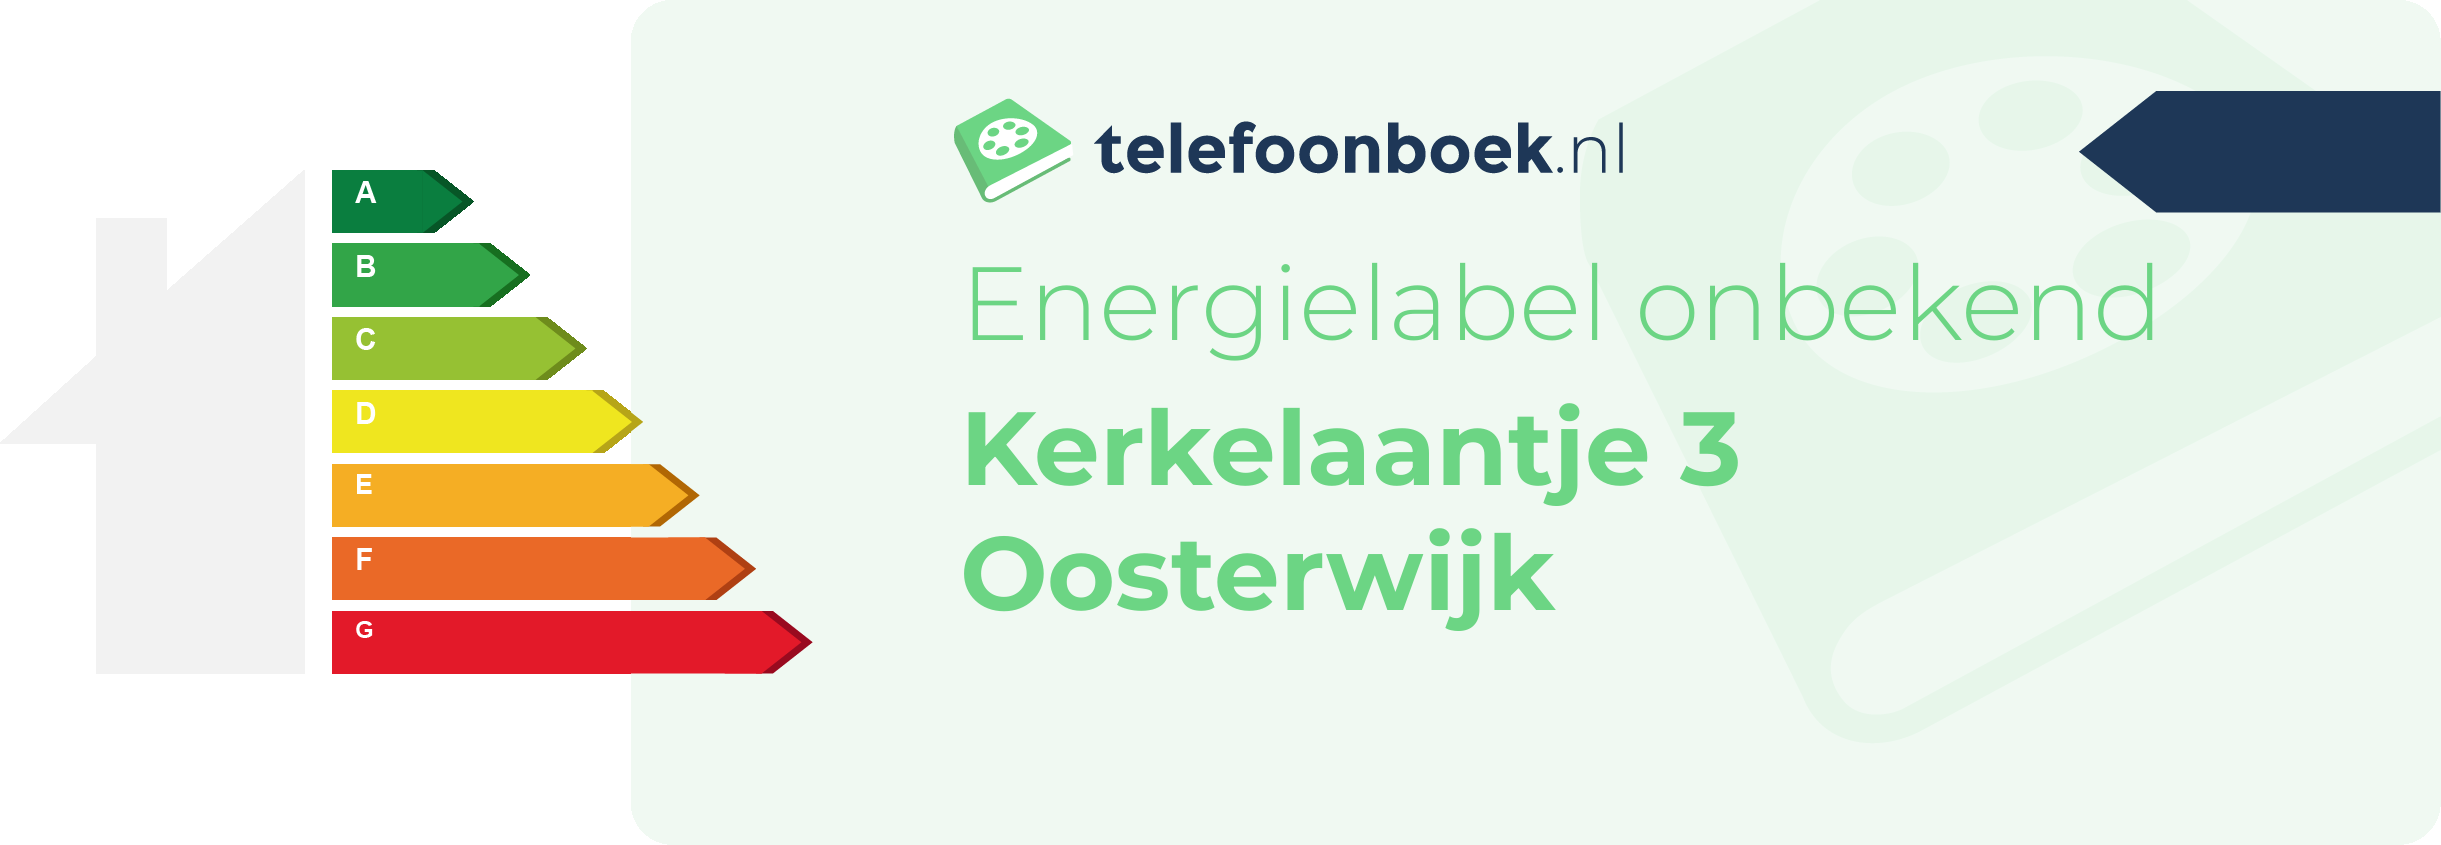 Energielabel Kerkelaantje 3 Oosterwijk